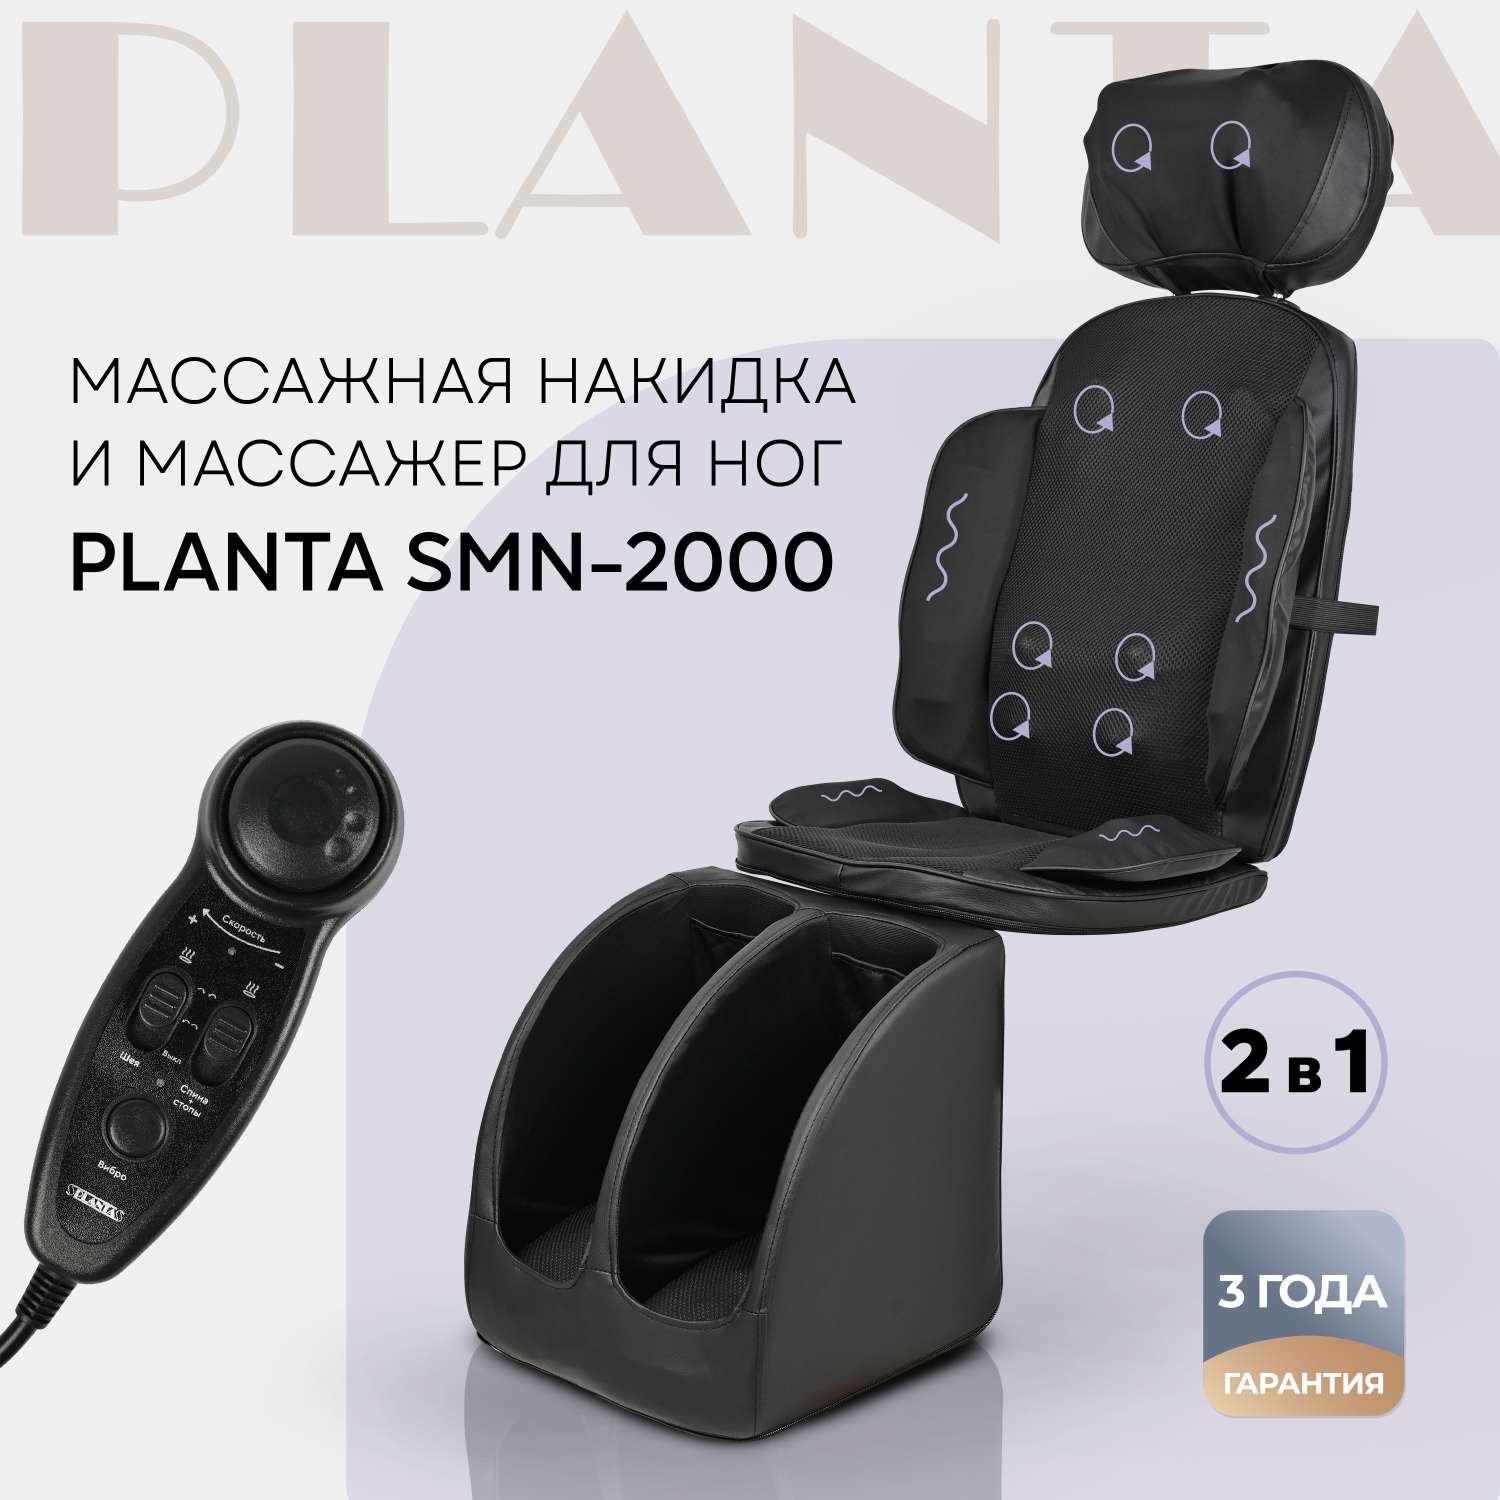 Массажное кресло Planta накидка и массажер для ног SMN-2000 2 в 1 - фото 1